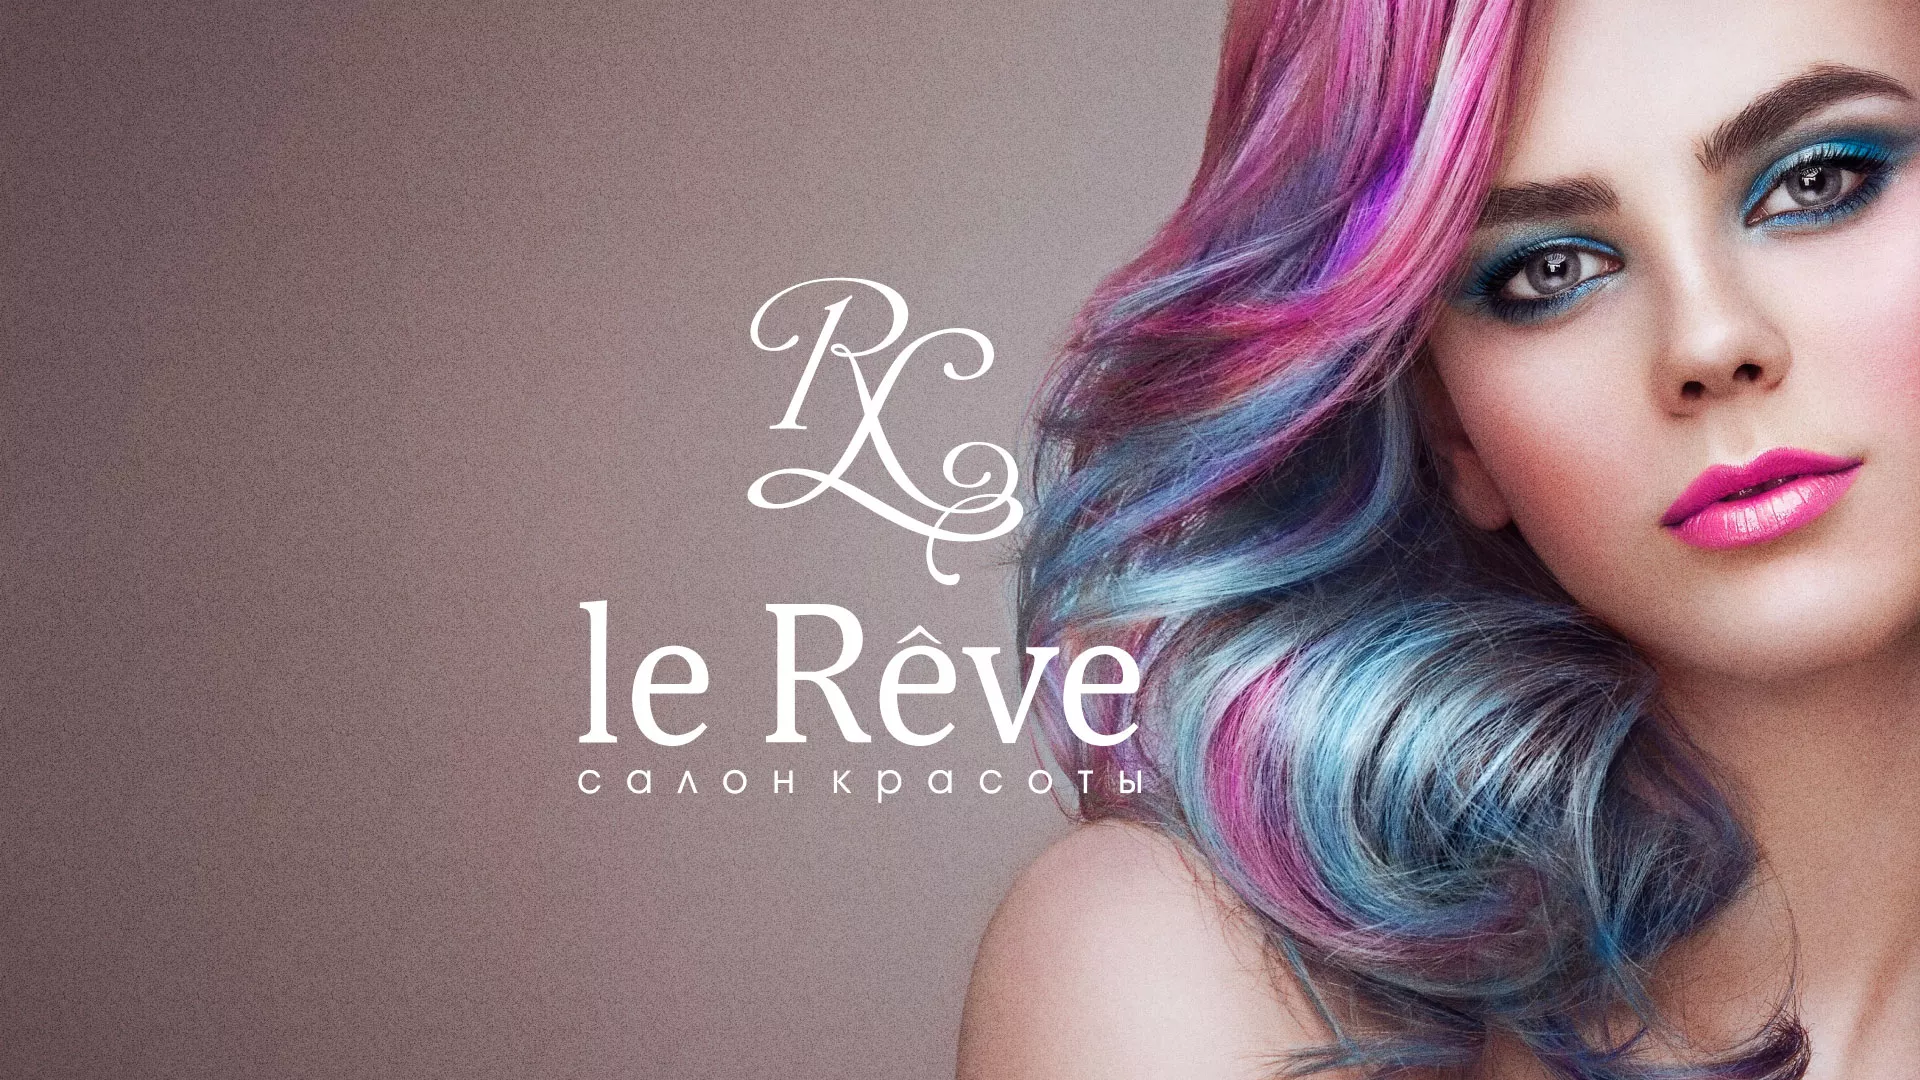 Создание сайта для салона красоты «Le Reve» в Севске